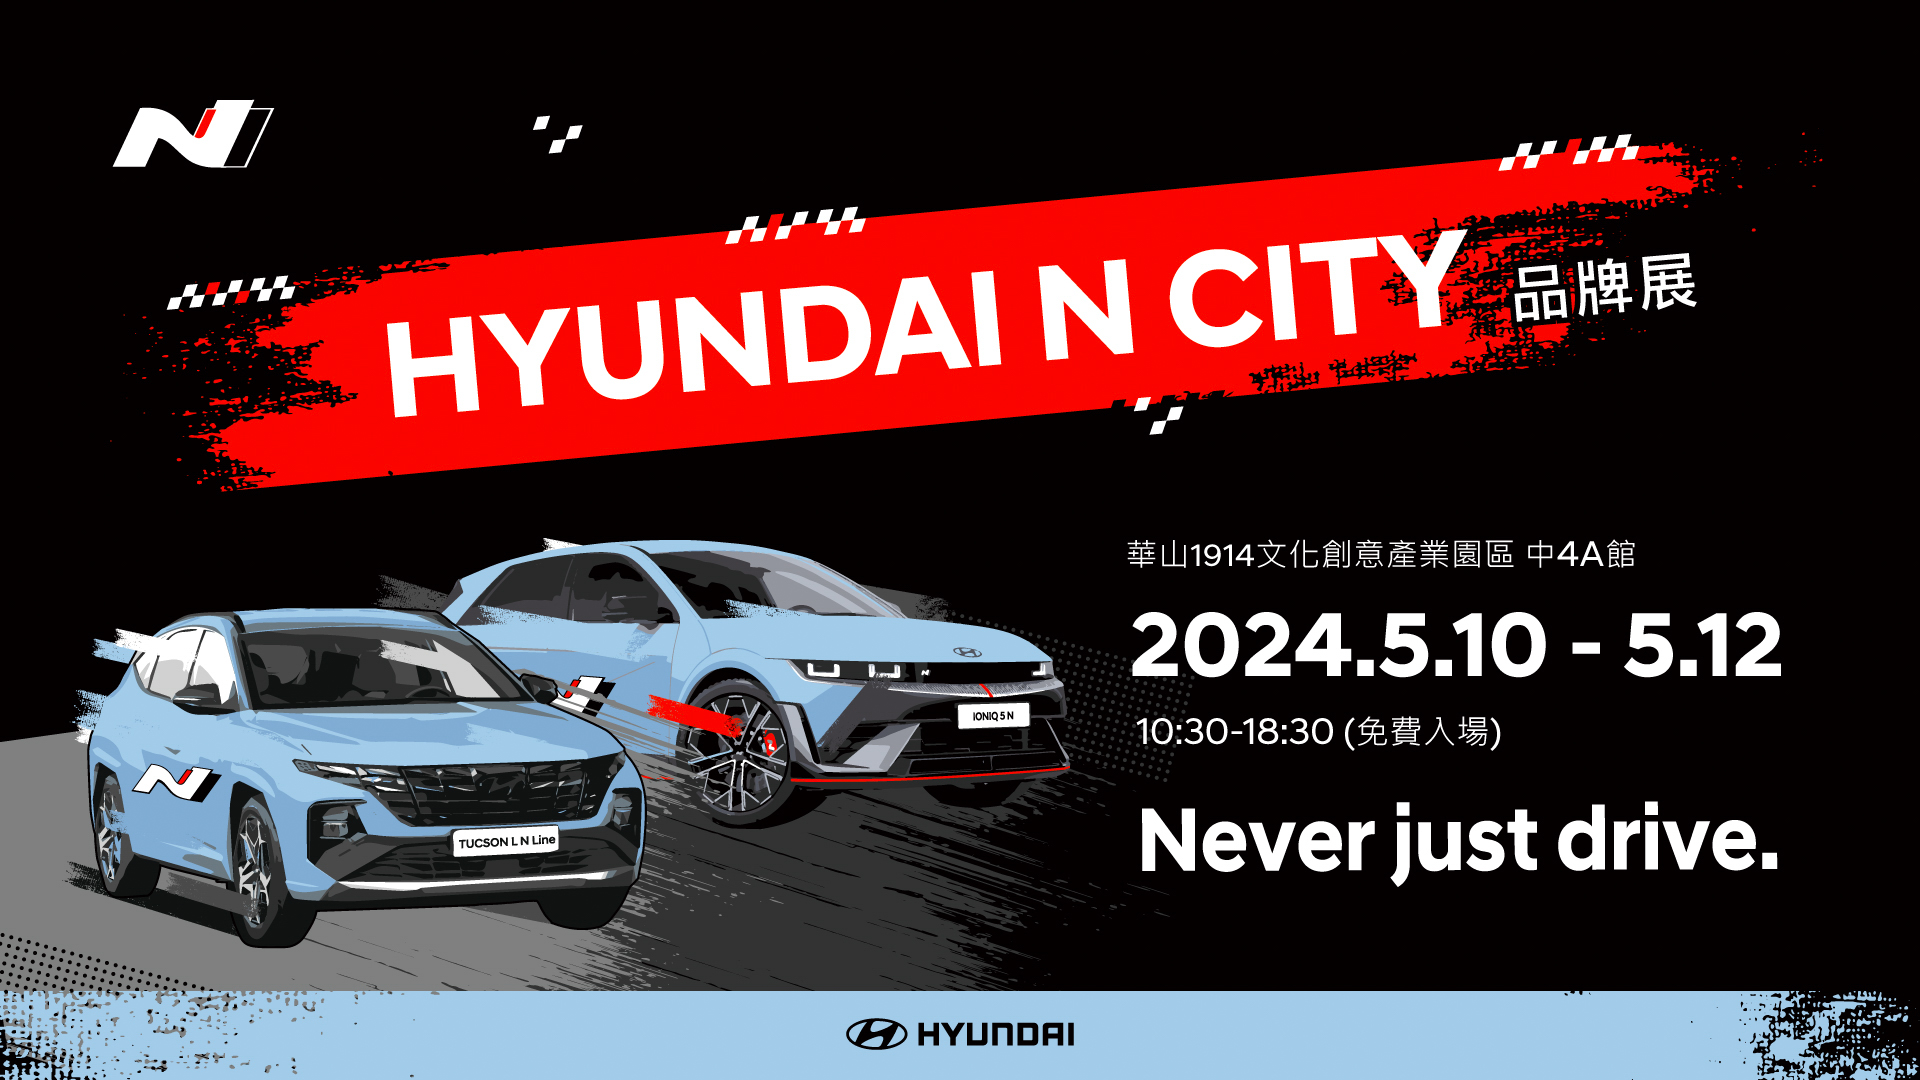 Hyundai N City 品牌展 5/10 - 5/12 華山園區首度展出